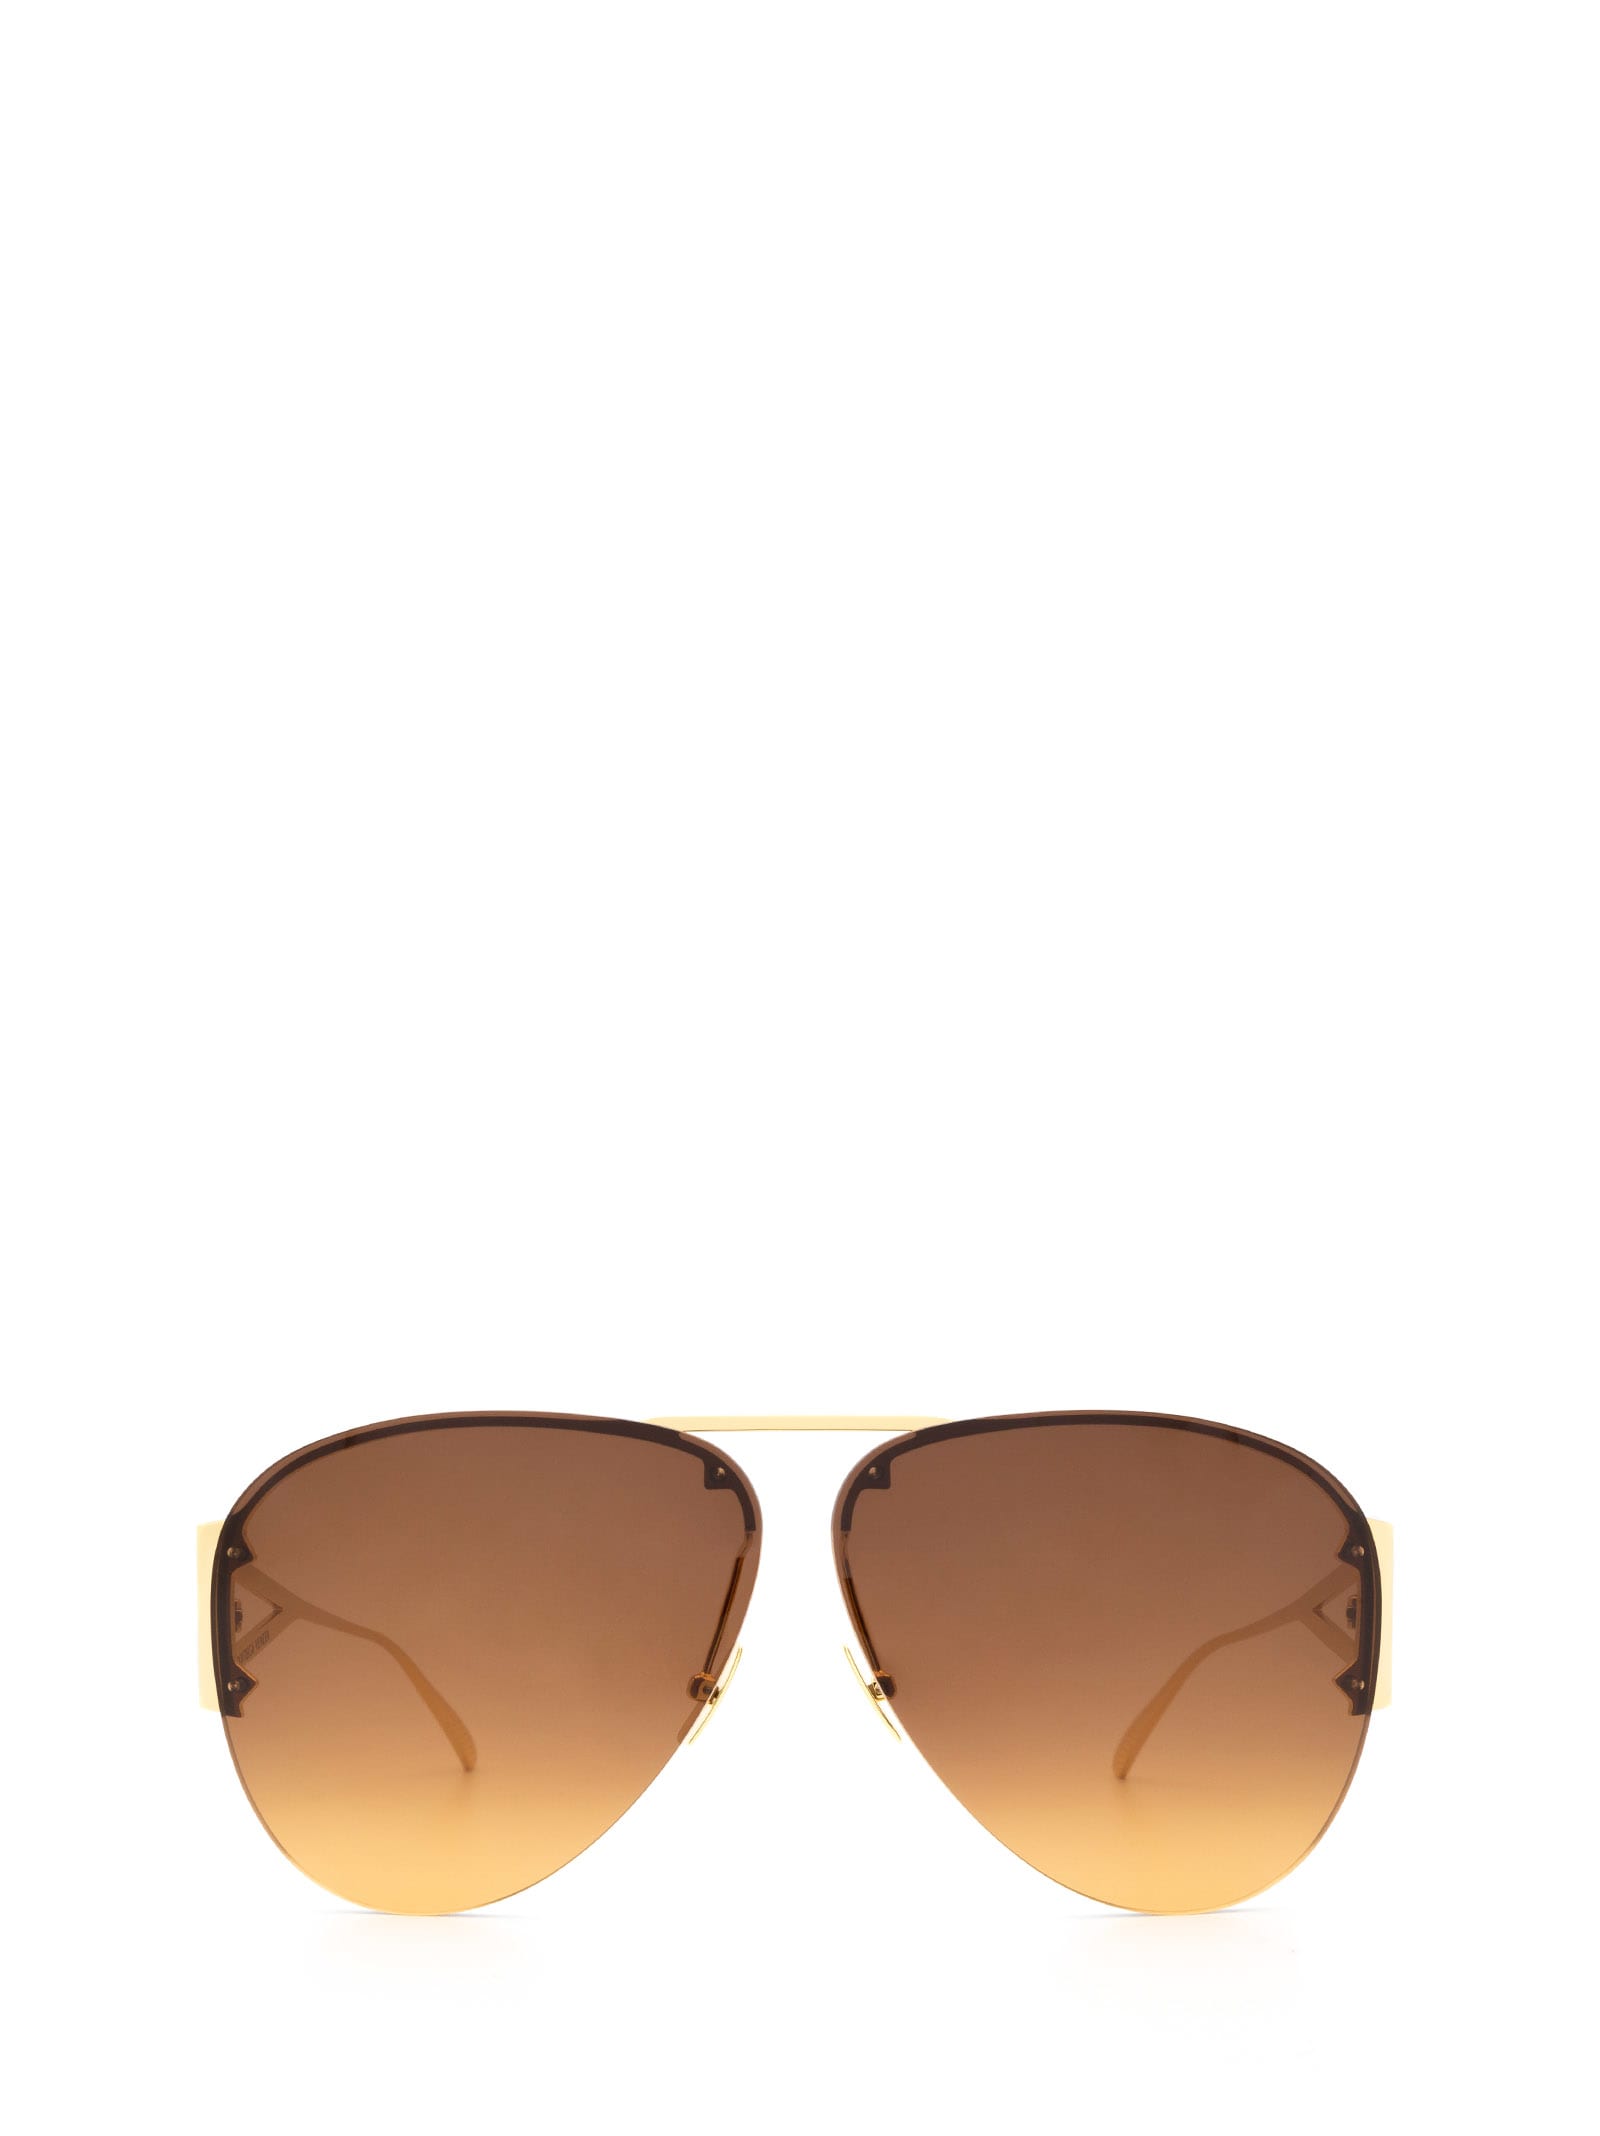 Bottega Veneta Bottega Veneta Bv1065s Gold Sunglasses